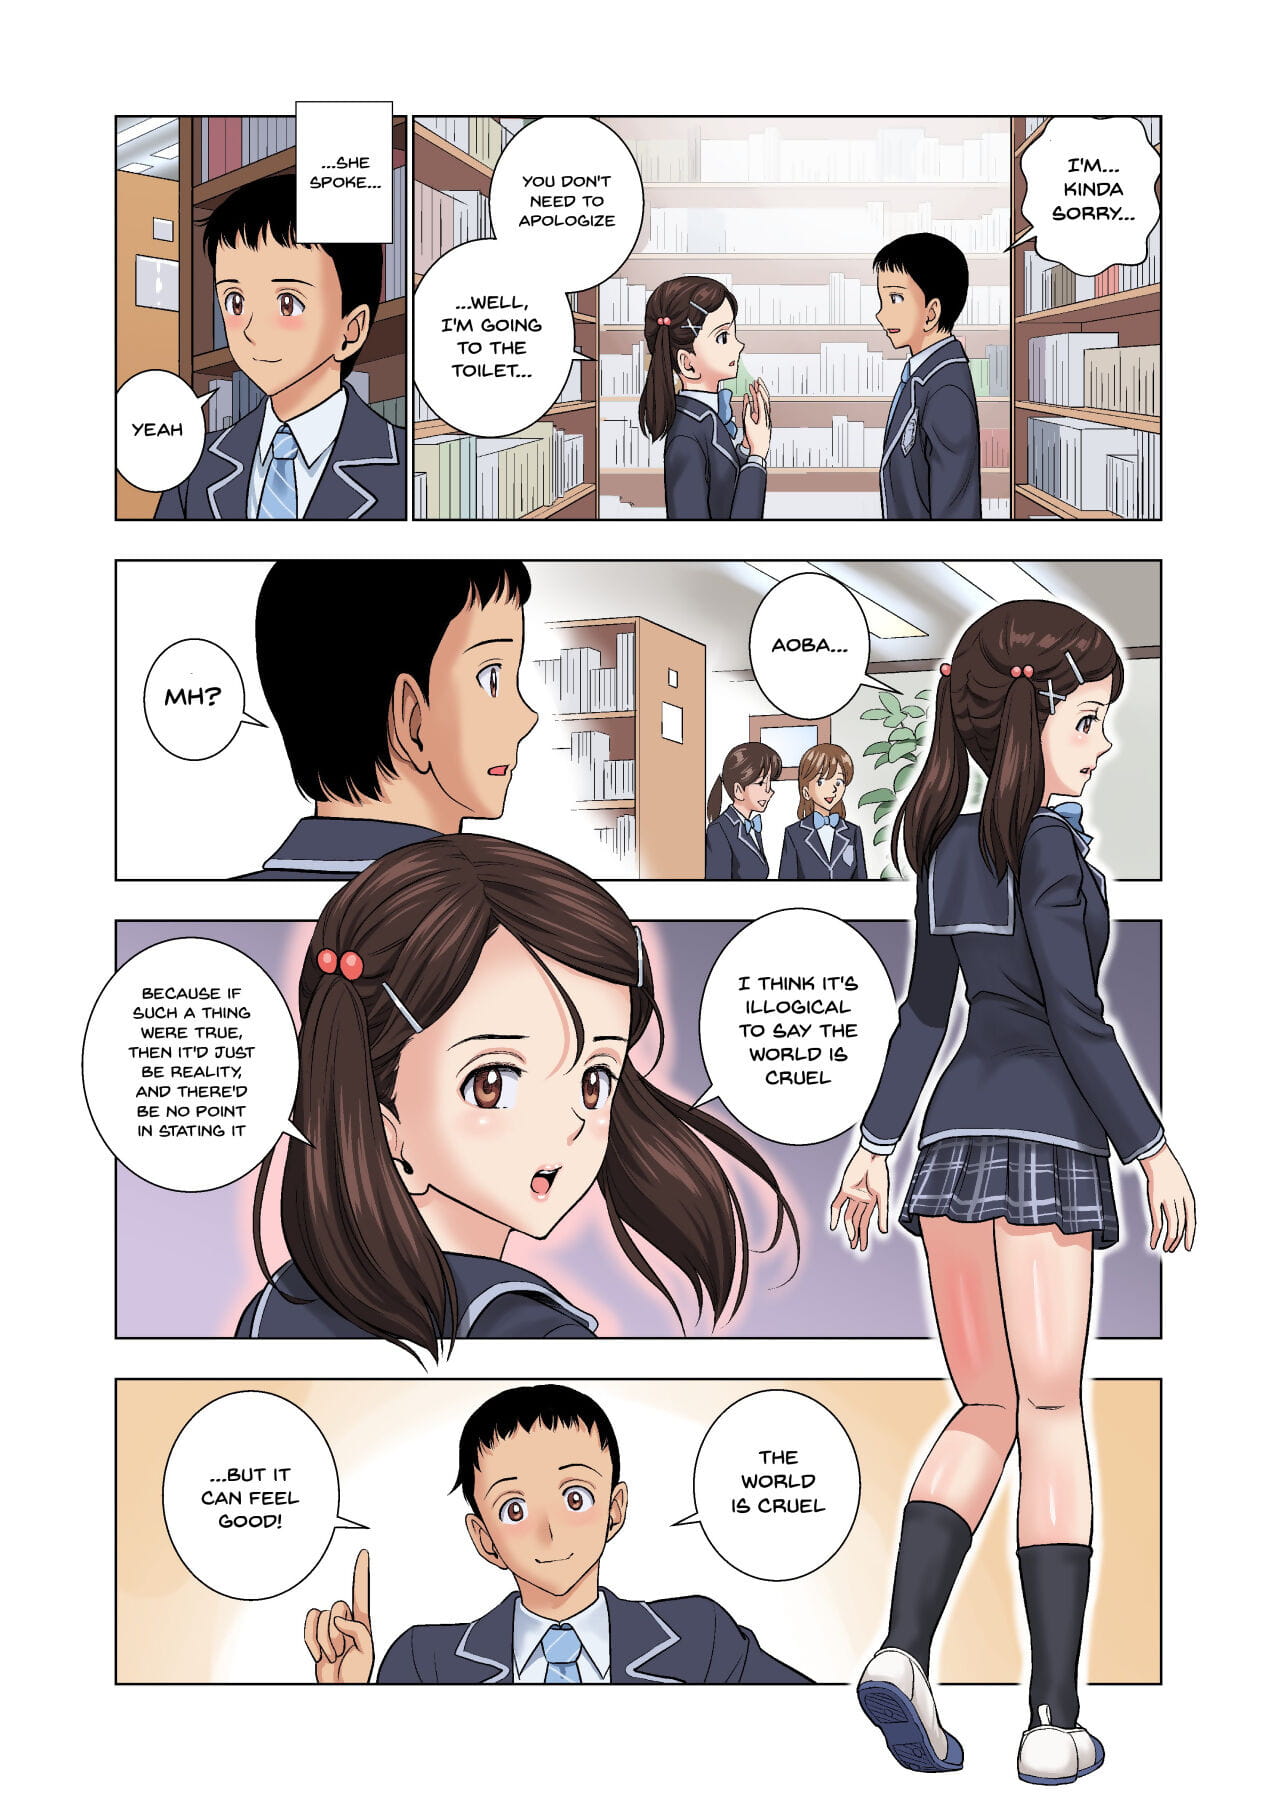 hiero meimon Onna manebu monogatari o história de sendo um gestor de de este rico meninas Clube inglês doujins.com parte 2